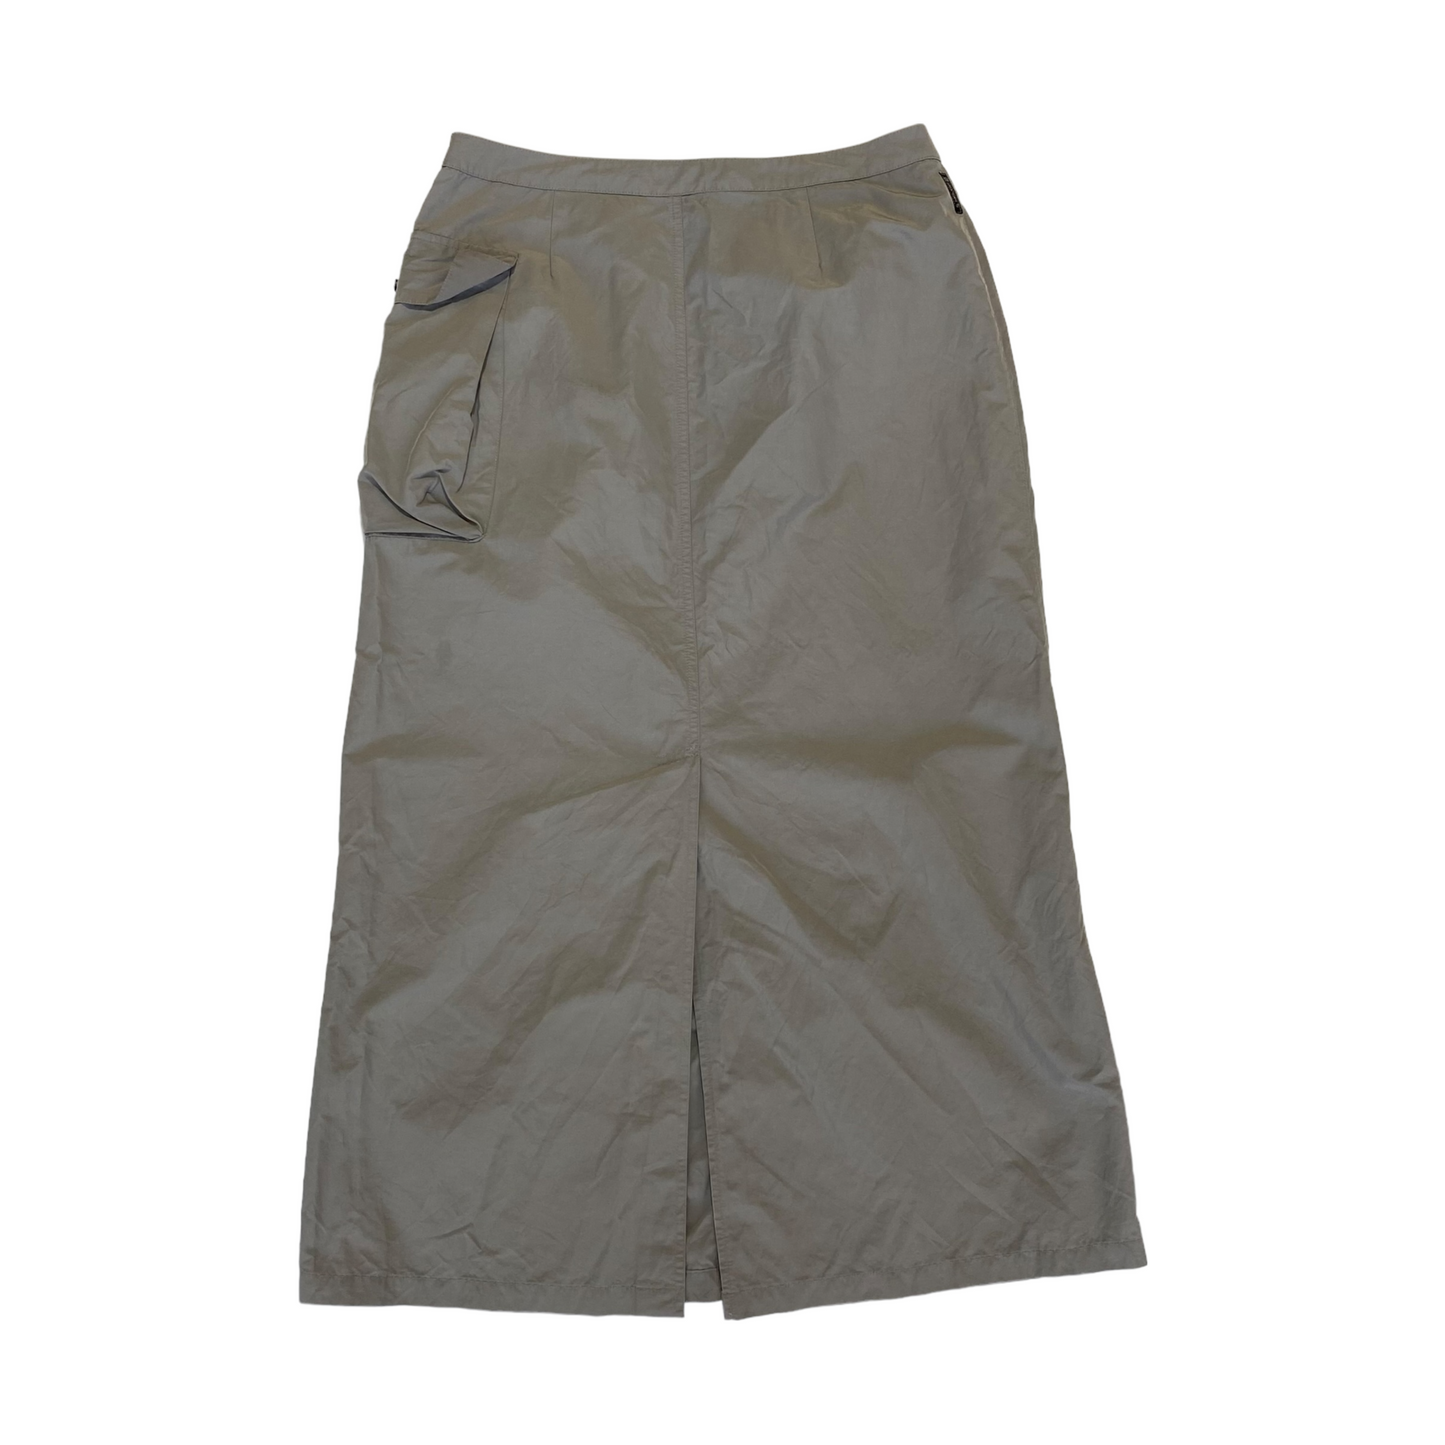 00’s Armani Jeans Cargo Skirt (40W)